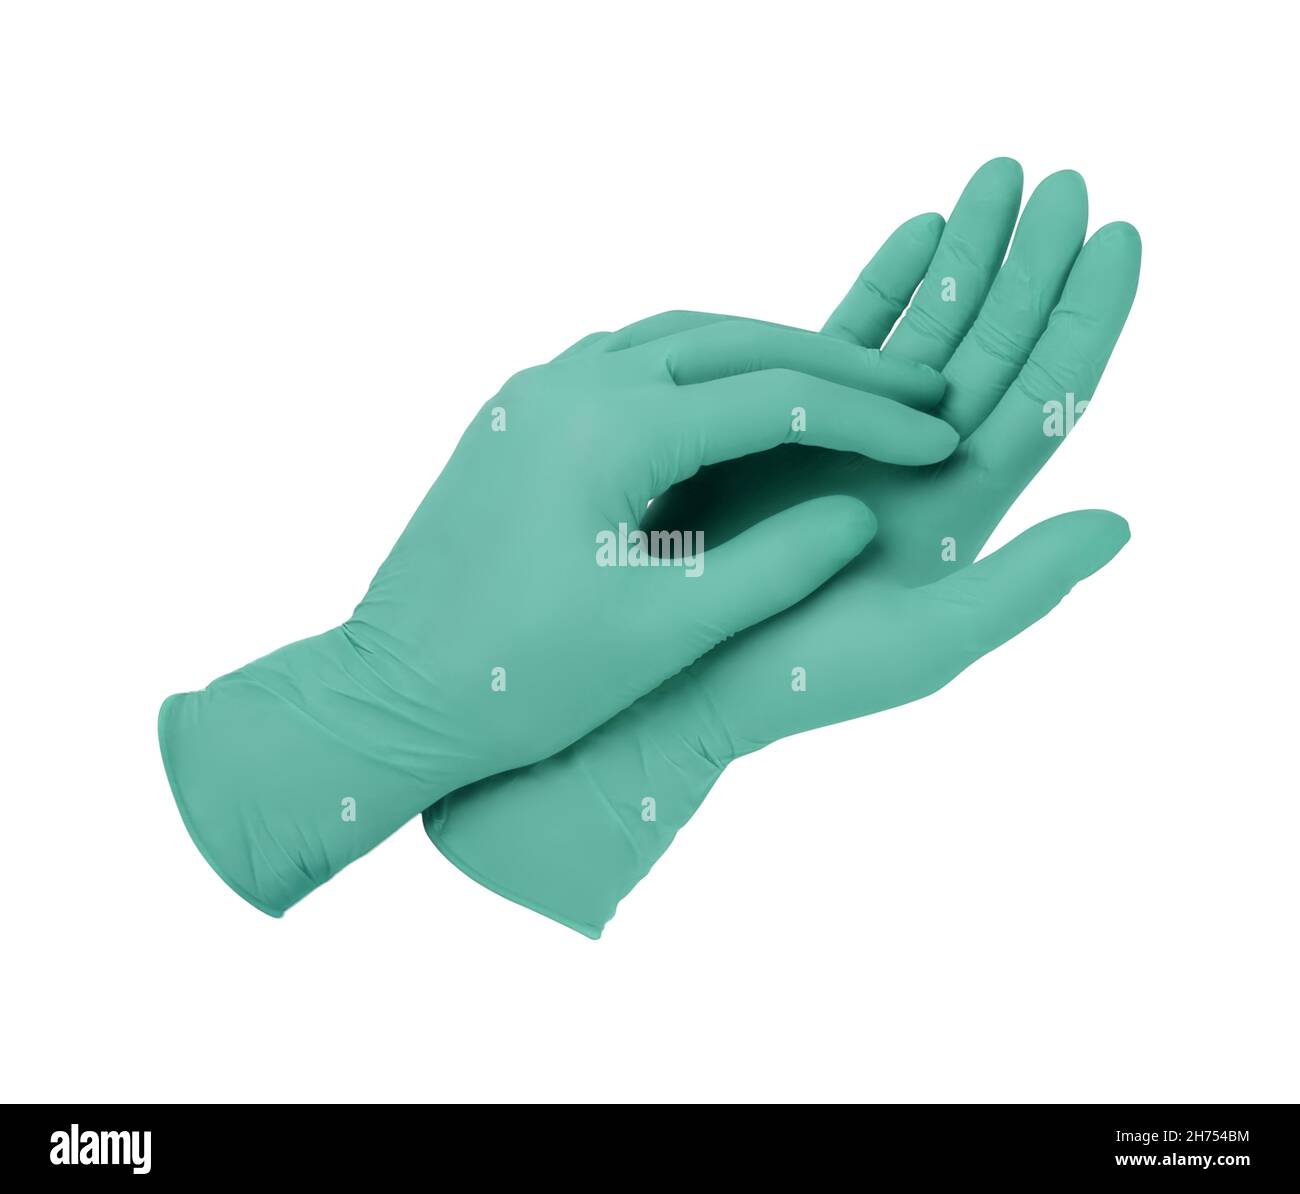 Nurse putting surgical glove on Banque d'images détourées - Alamy